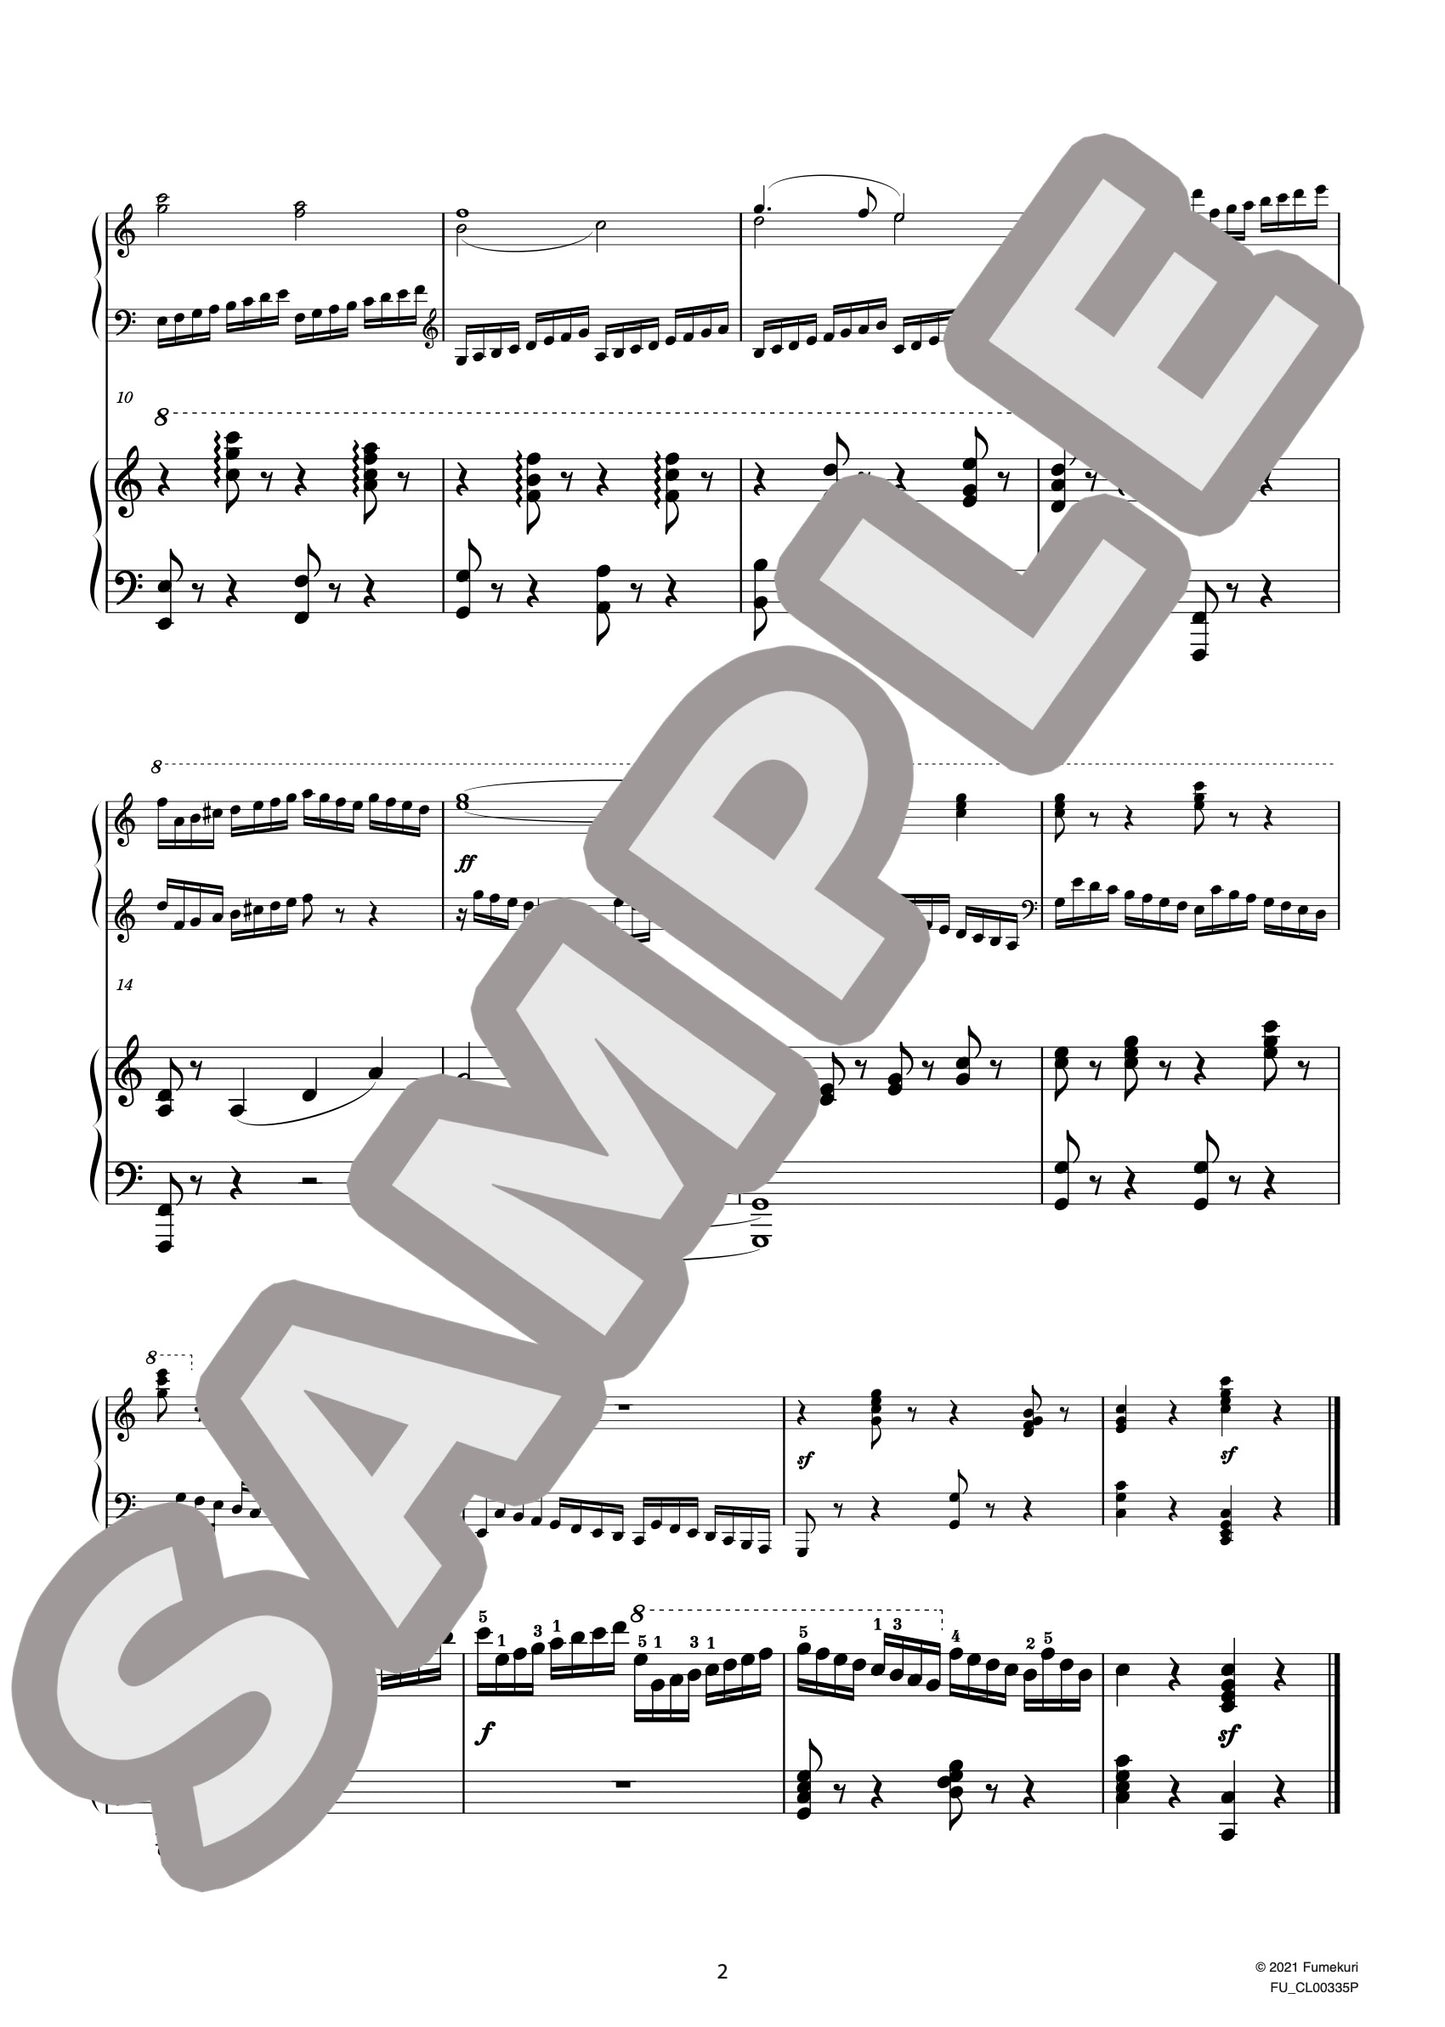 2台のピアノのための速度練習曲（40番練習曲）作品299b 第2番（CZERNY) / クラシック・オリジナル楽曲【中上級】